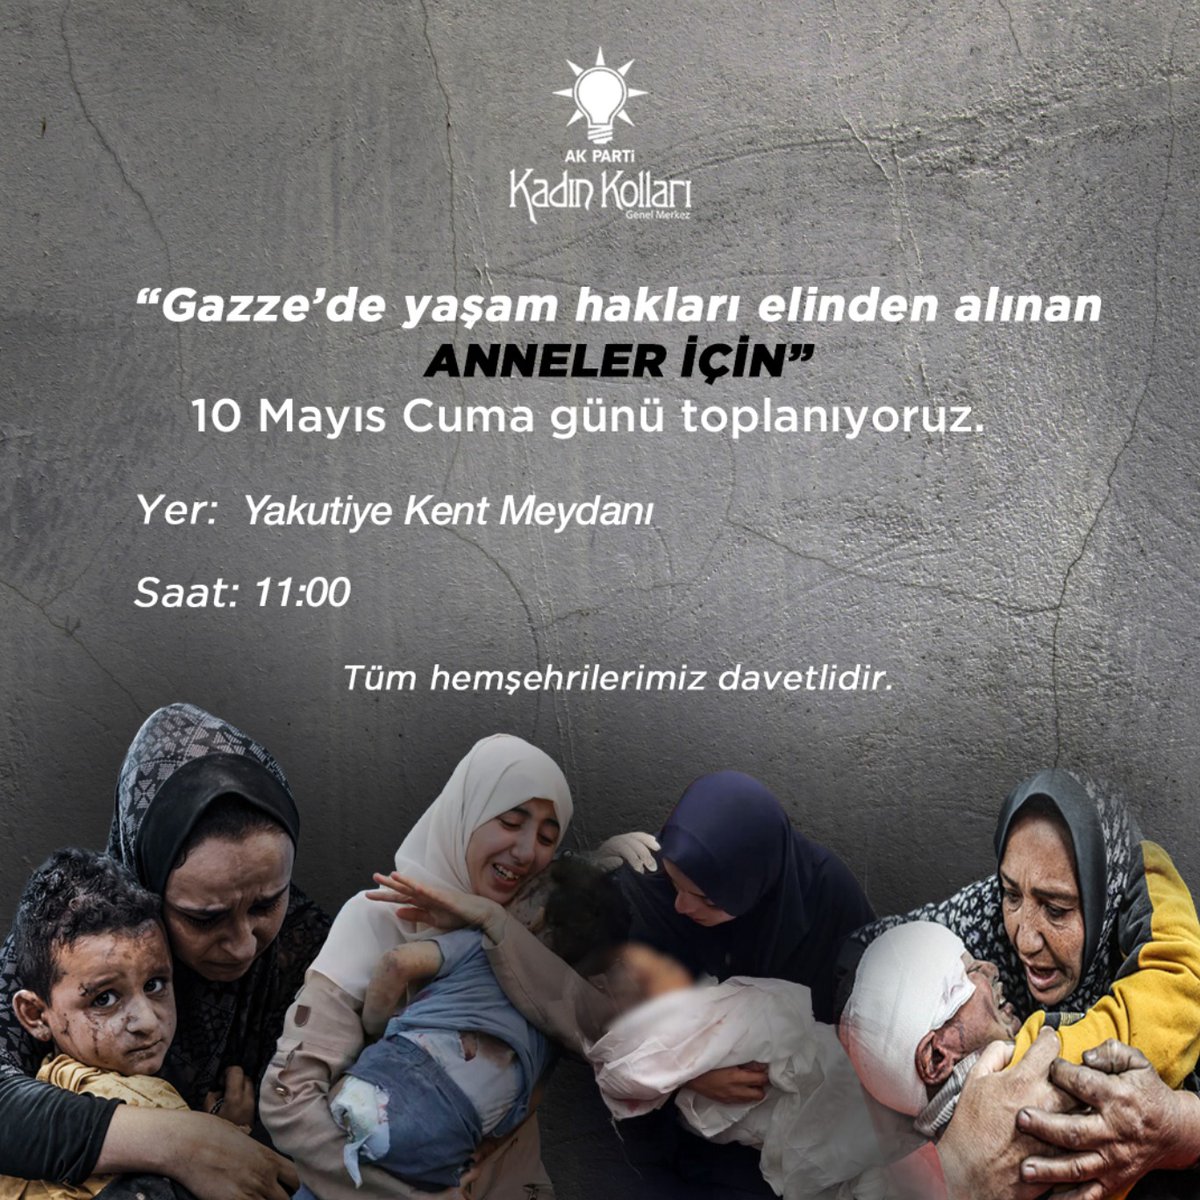 “Gazze’de yaşam hakları elinden alınan ANNELER İÇİN” 10 Mayıs Cuma günü toplanıyoruz. Yer: Yakutiye Kent Meydanı Saat: 11:00 Tüm kadınlar davetlidir.